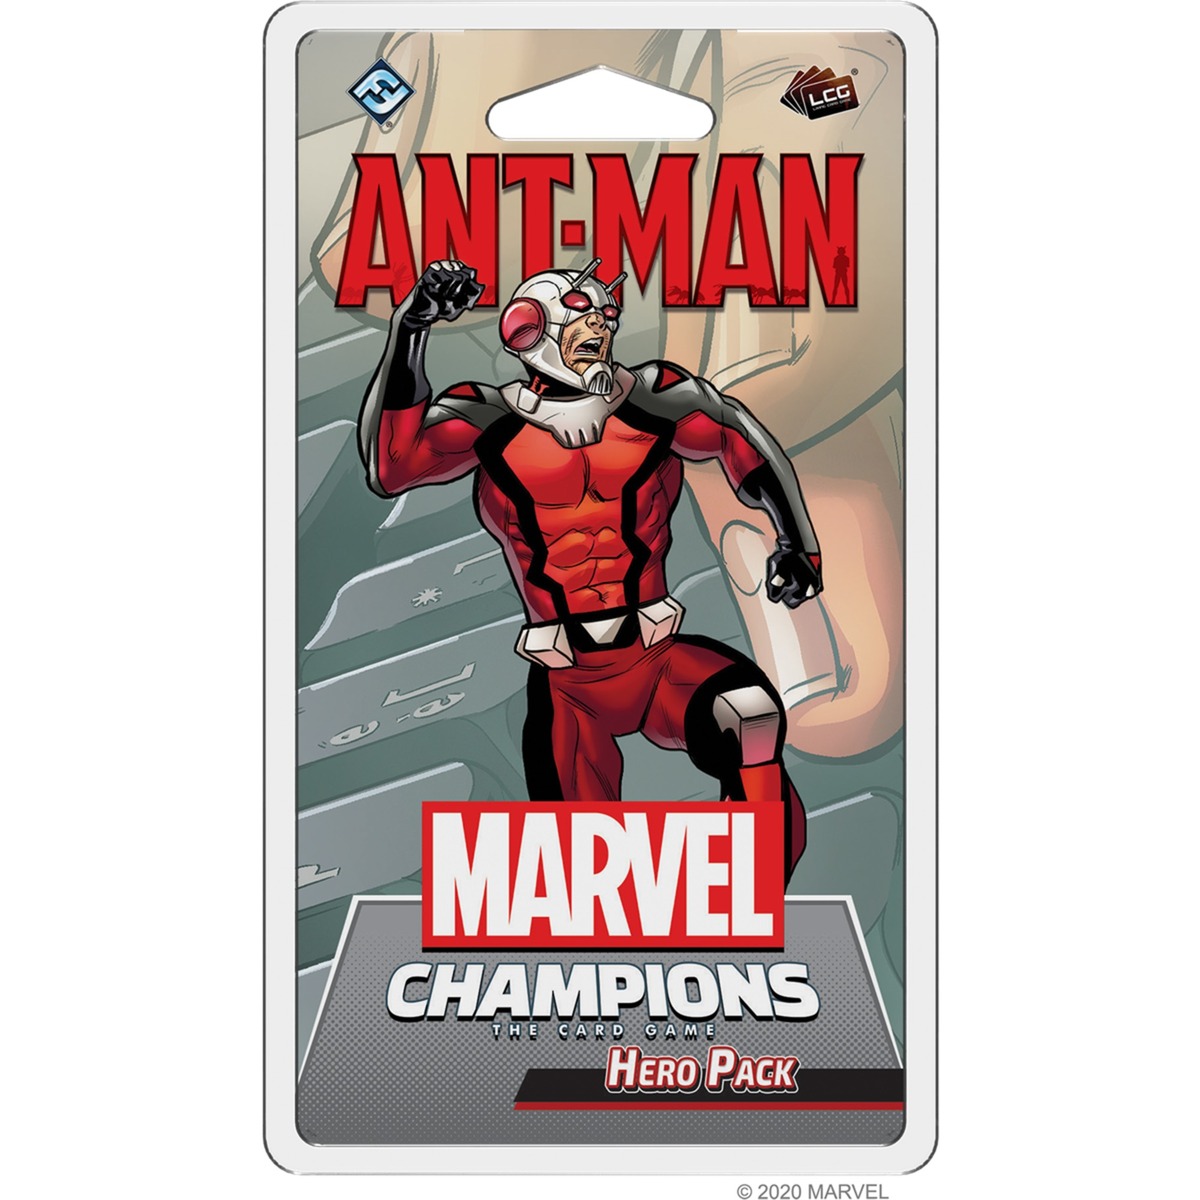 Image of Alternate - Marvel Champions: Das Kartenspiel - Ant-Man online einkaufen bei Alternate